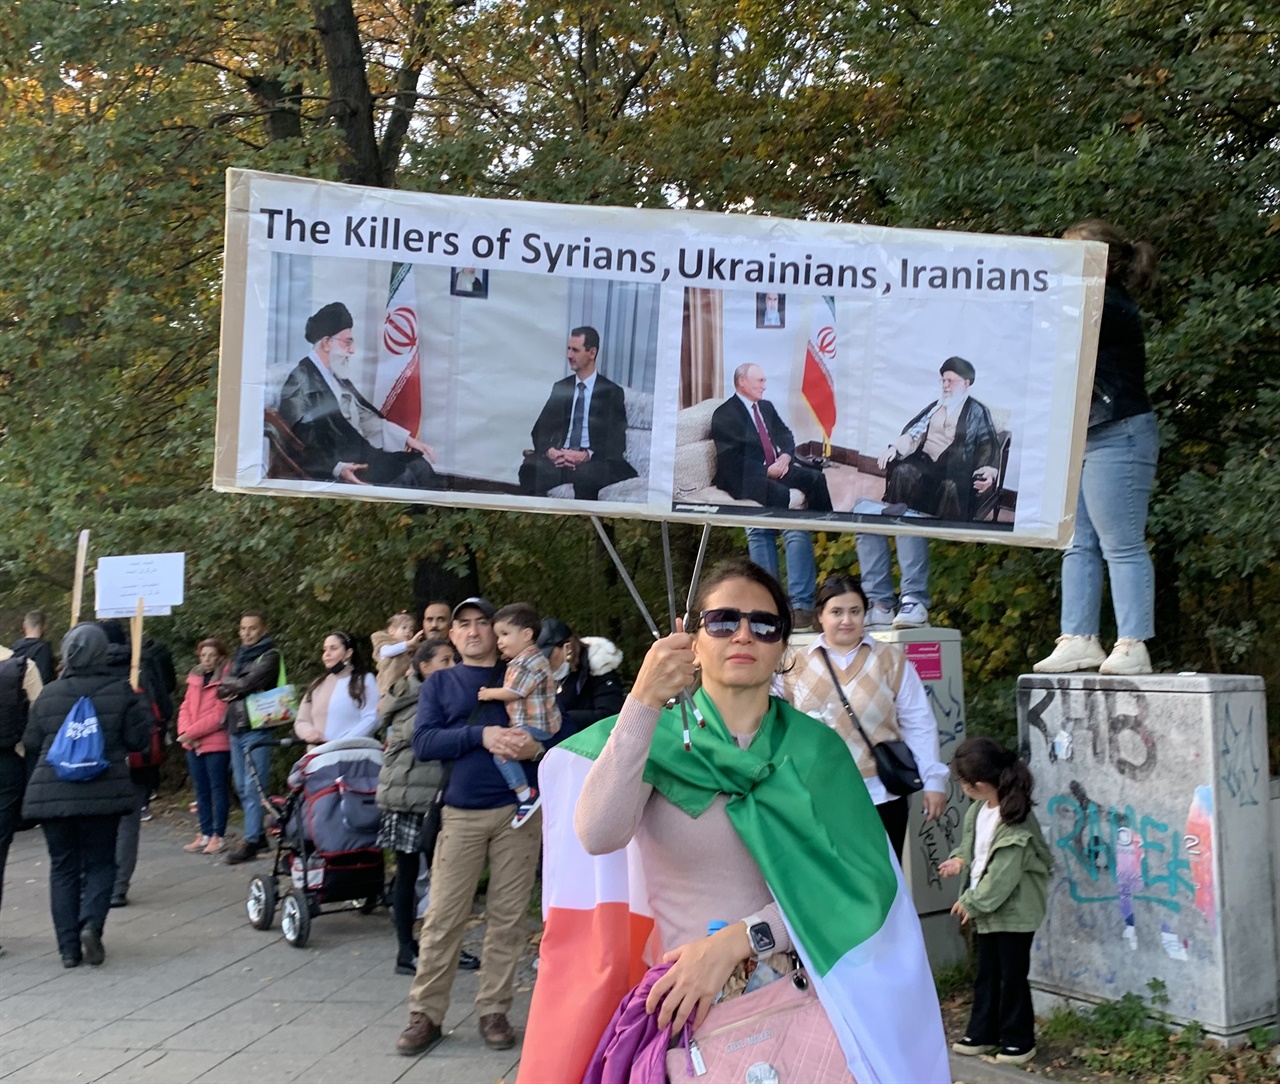 이란 정부의 시리아전쟁, 우크라이나 전쟁에의 관여를 비판하는 듯한 손팻말을 들고 있는 집회 참가자. "시리아인들, 우크라이나인들, 이란인들의 킬러"라고 씌였다.